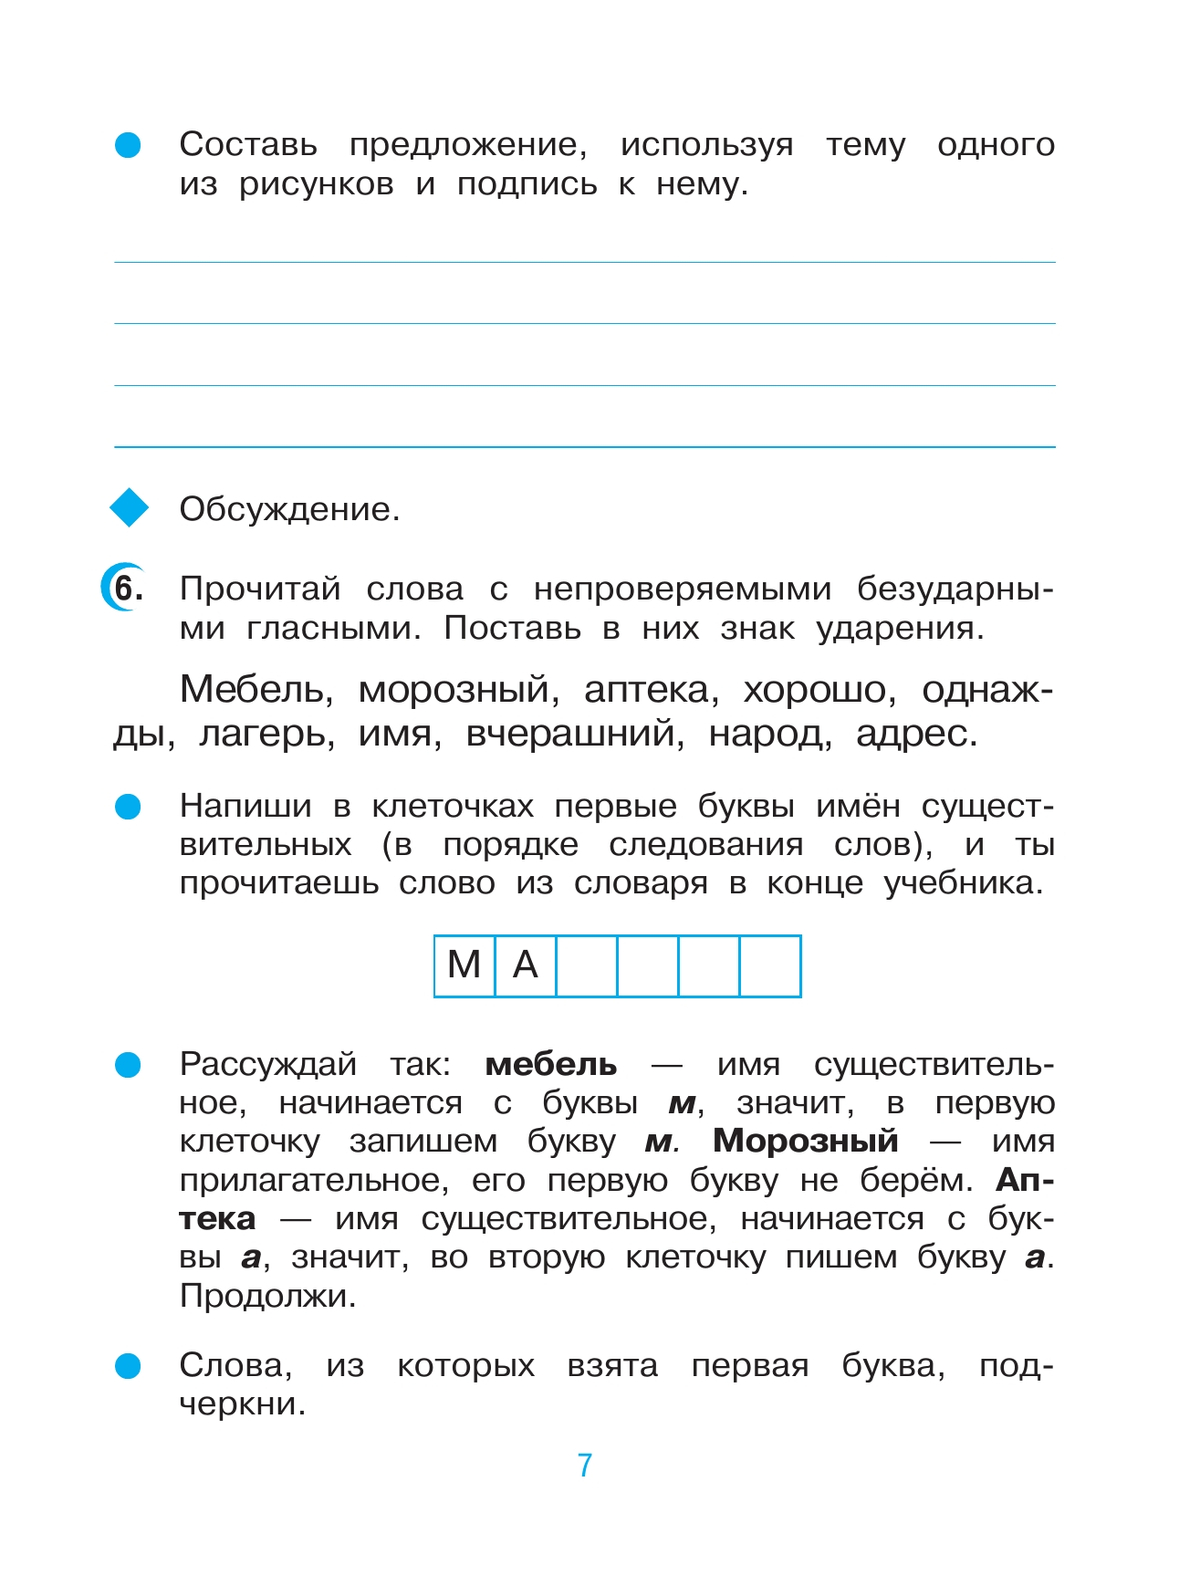 Русский язык. 3 класс. Рабочая тетрадь. В 2 ч. Часть 1 6